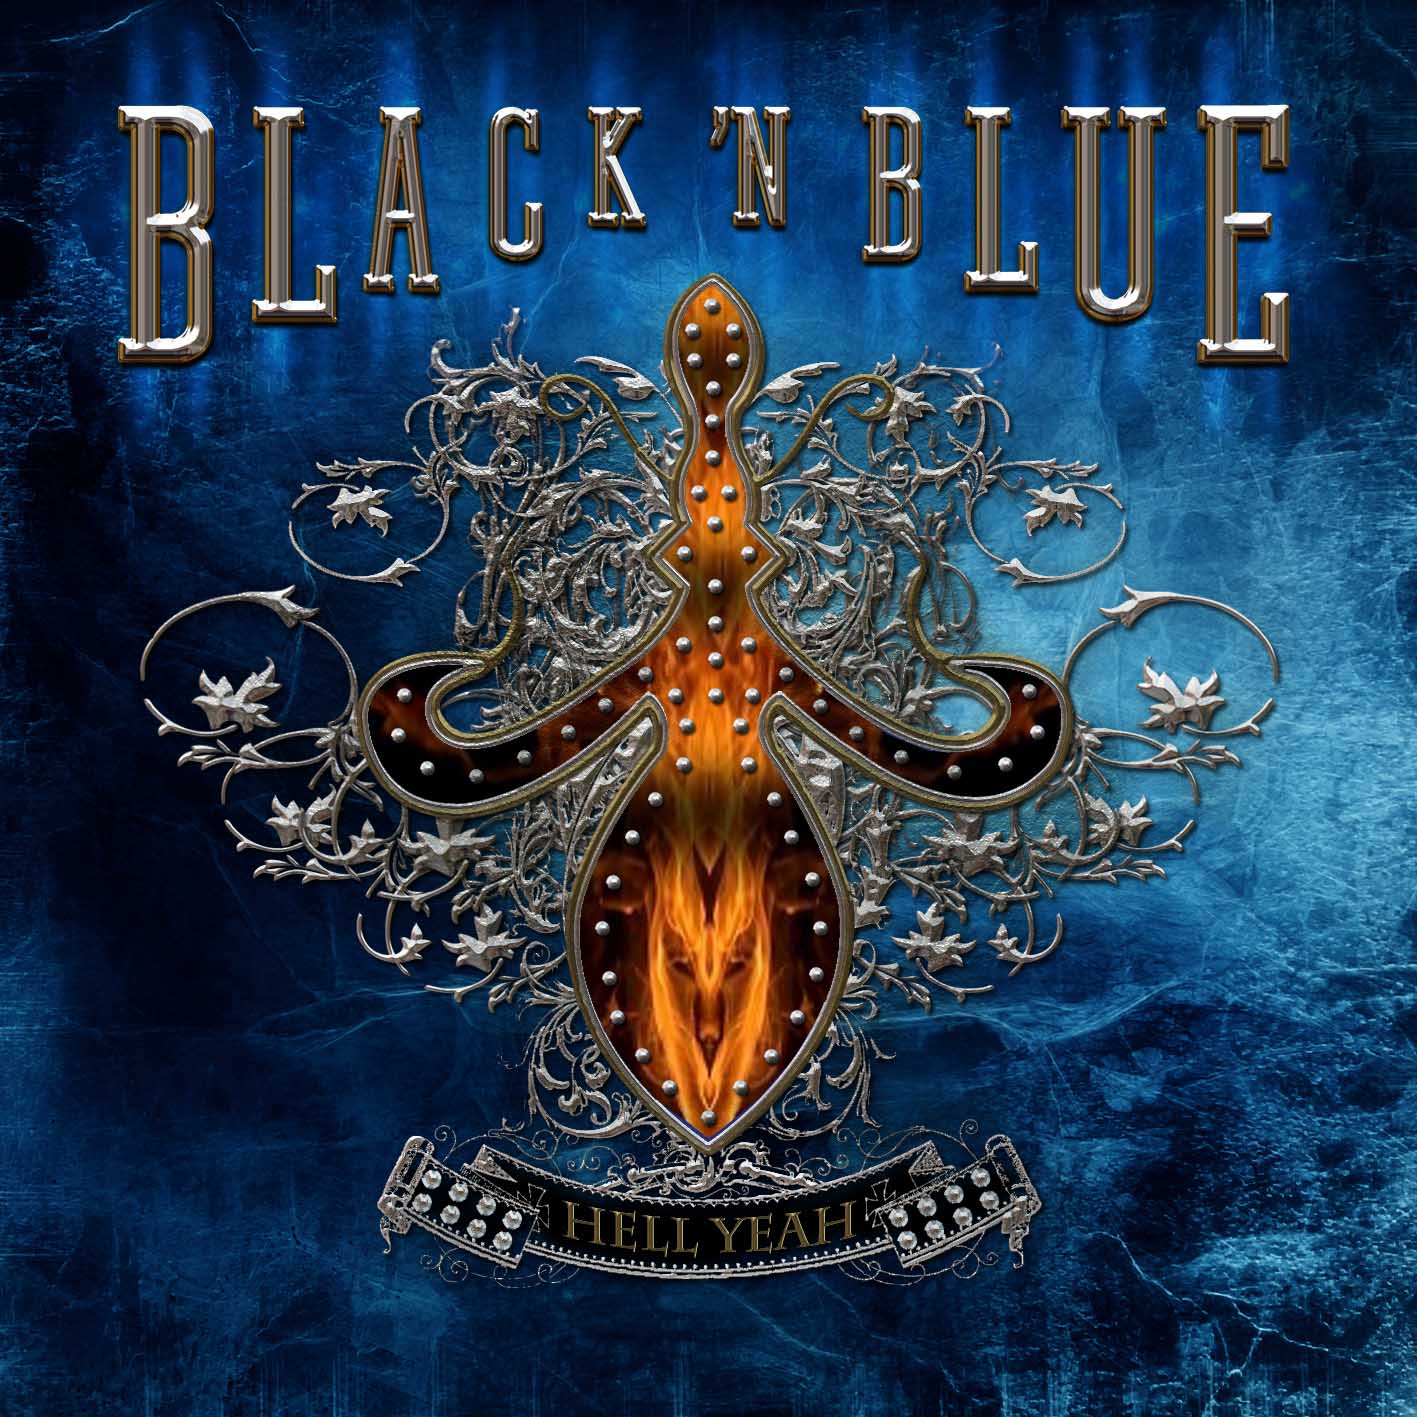 Black ‘N Blue - Hell Yeah!